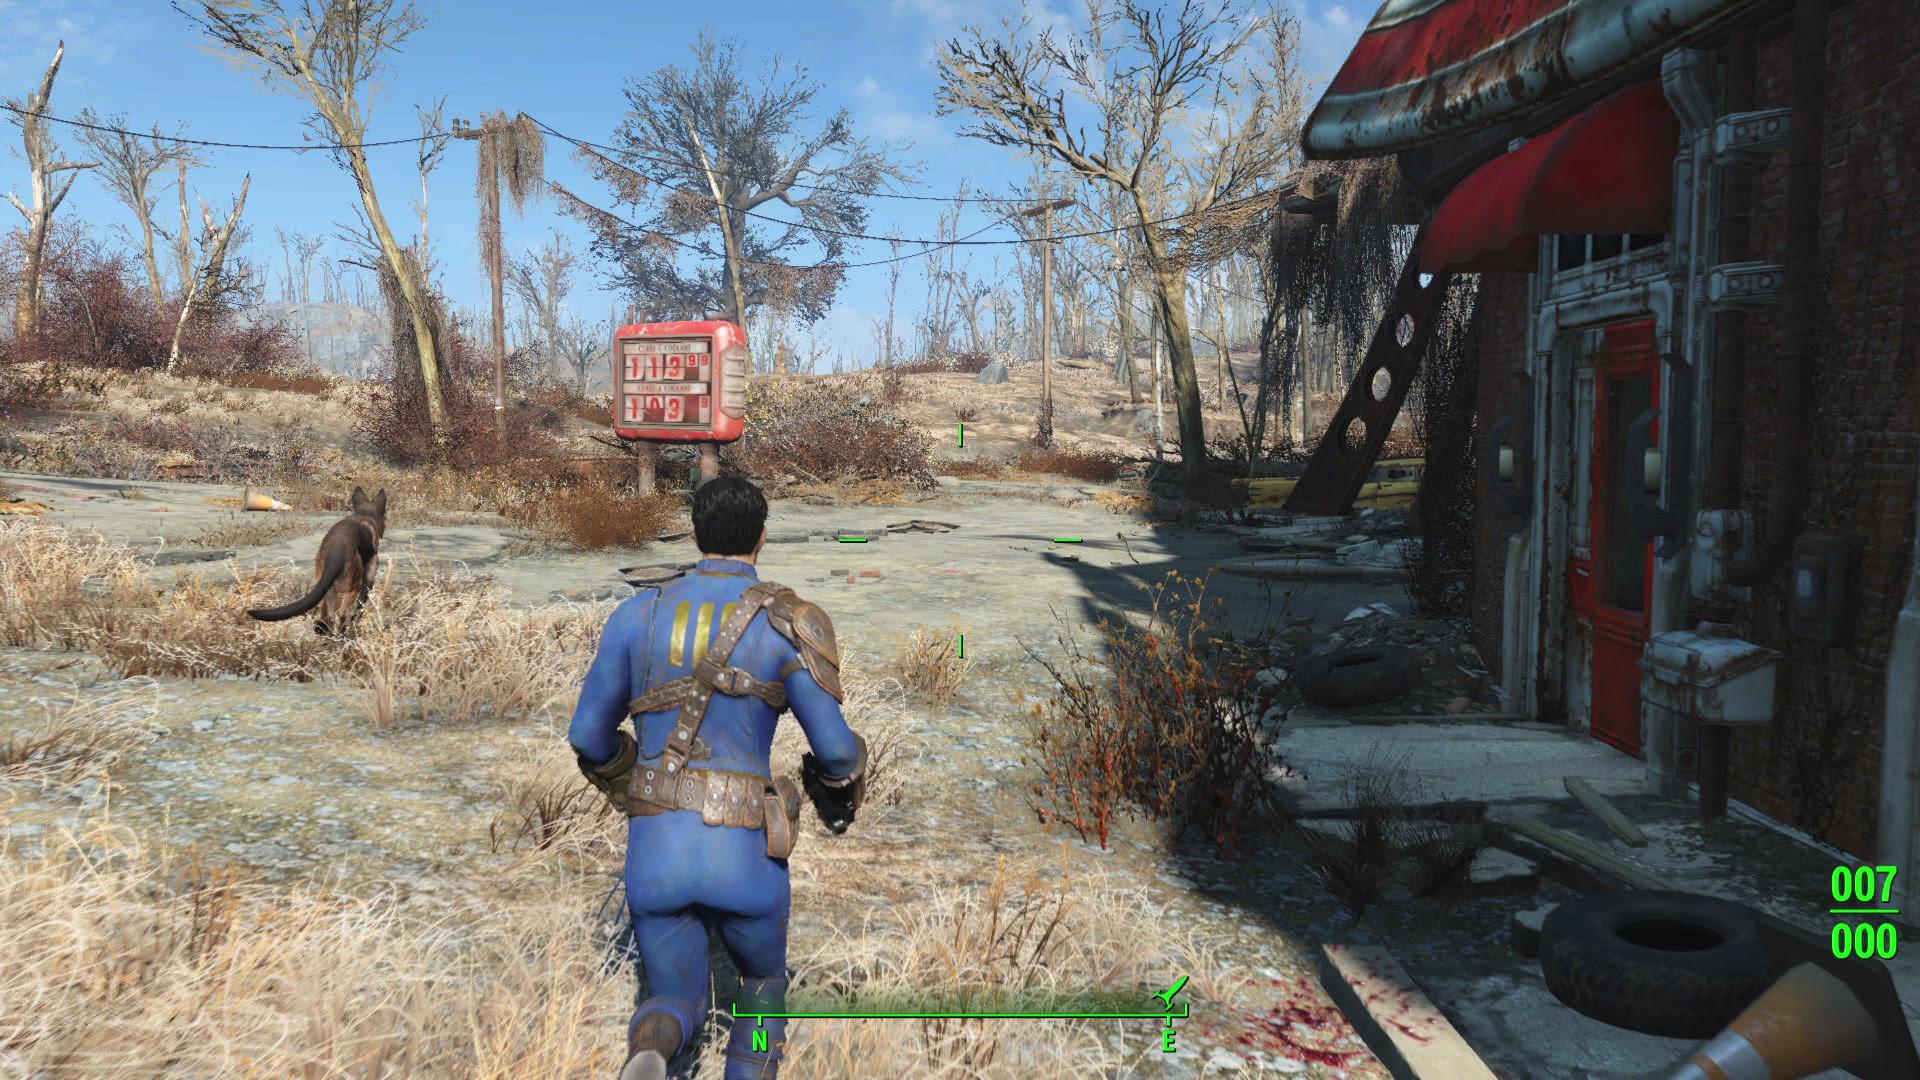 Fallout 4 - Wikipedia